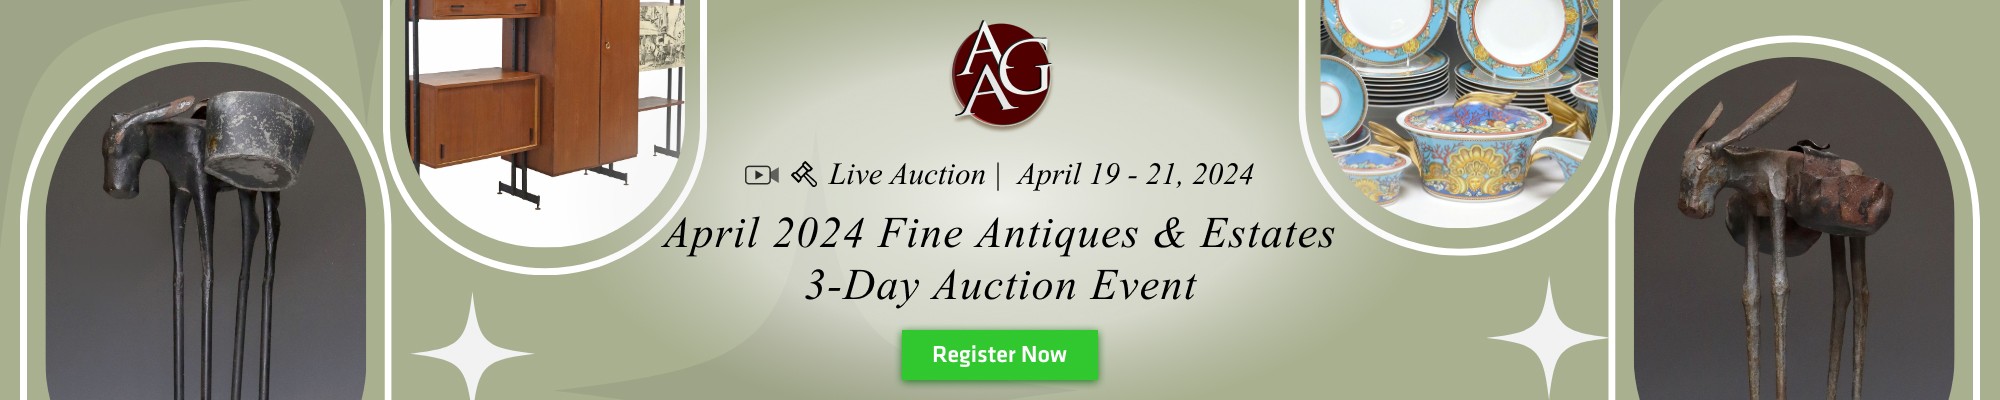 April 2024 Fine Antiques & Estates 3-Day Auction Event